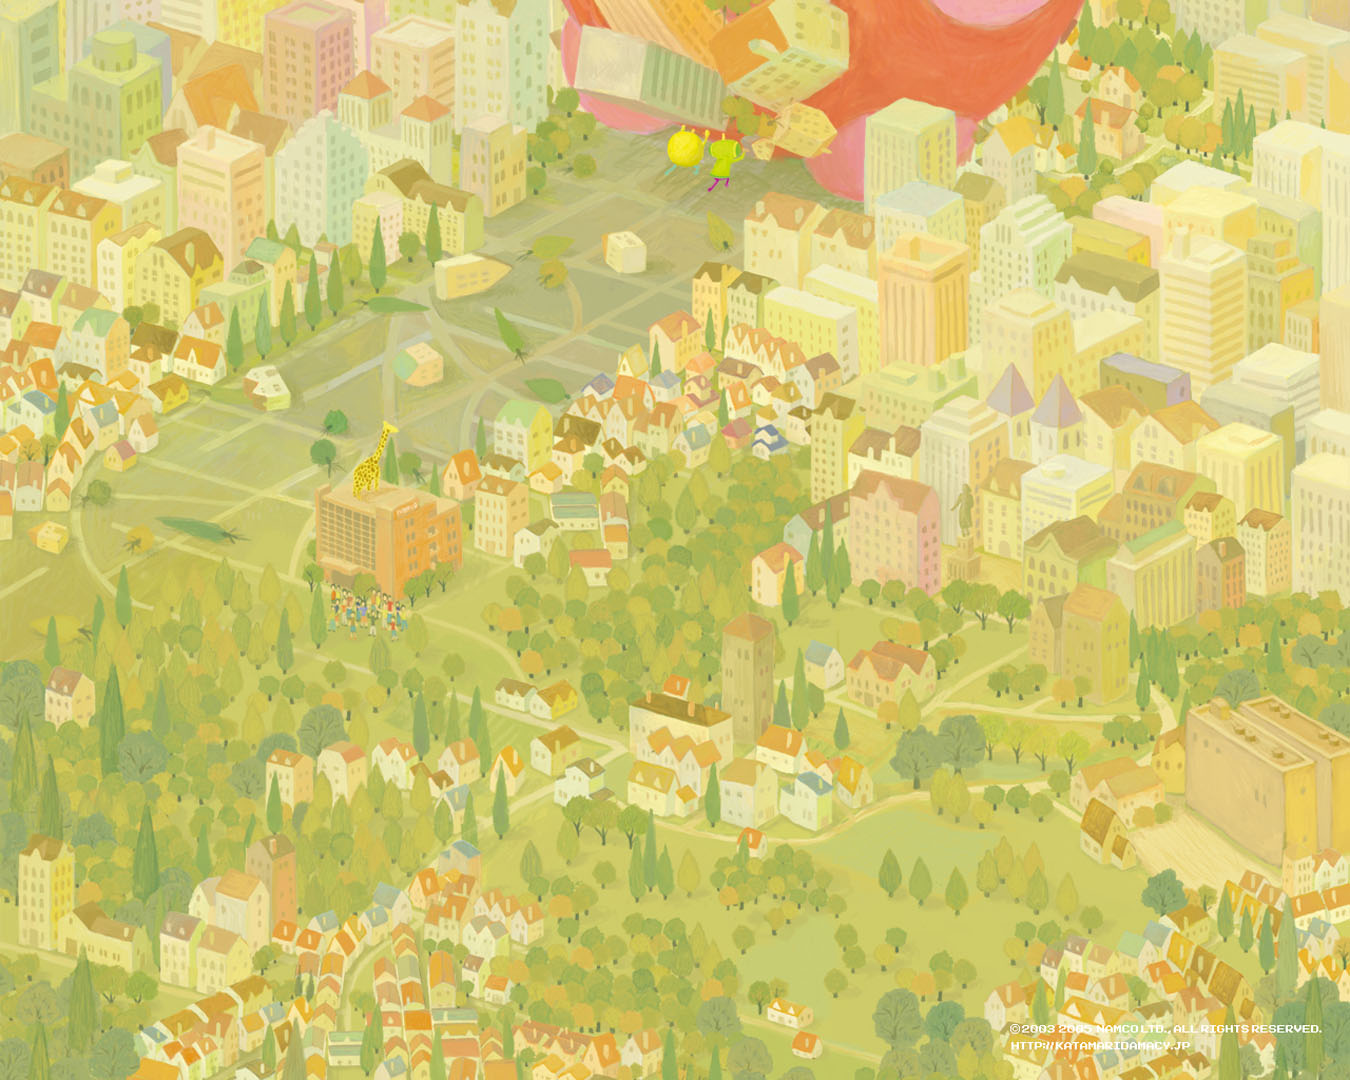 World Action Games Wallpaper Image Featuring Katamari Damacy